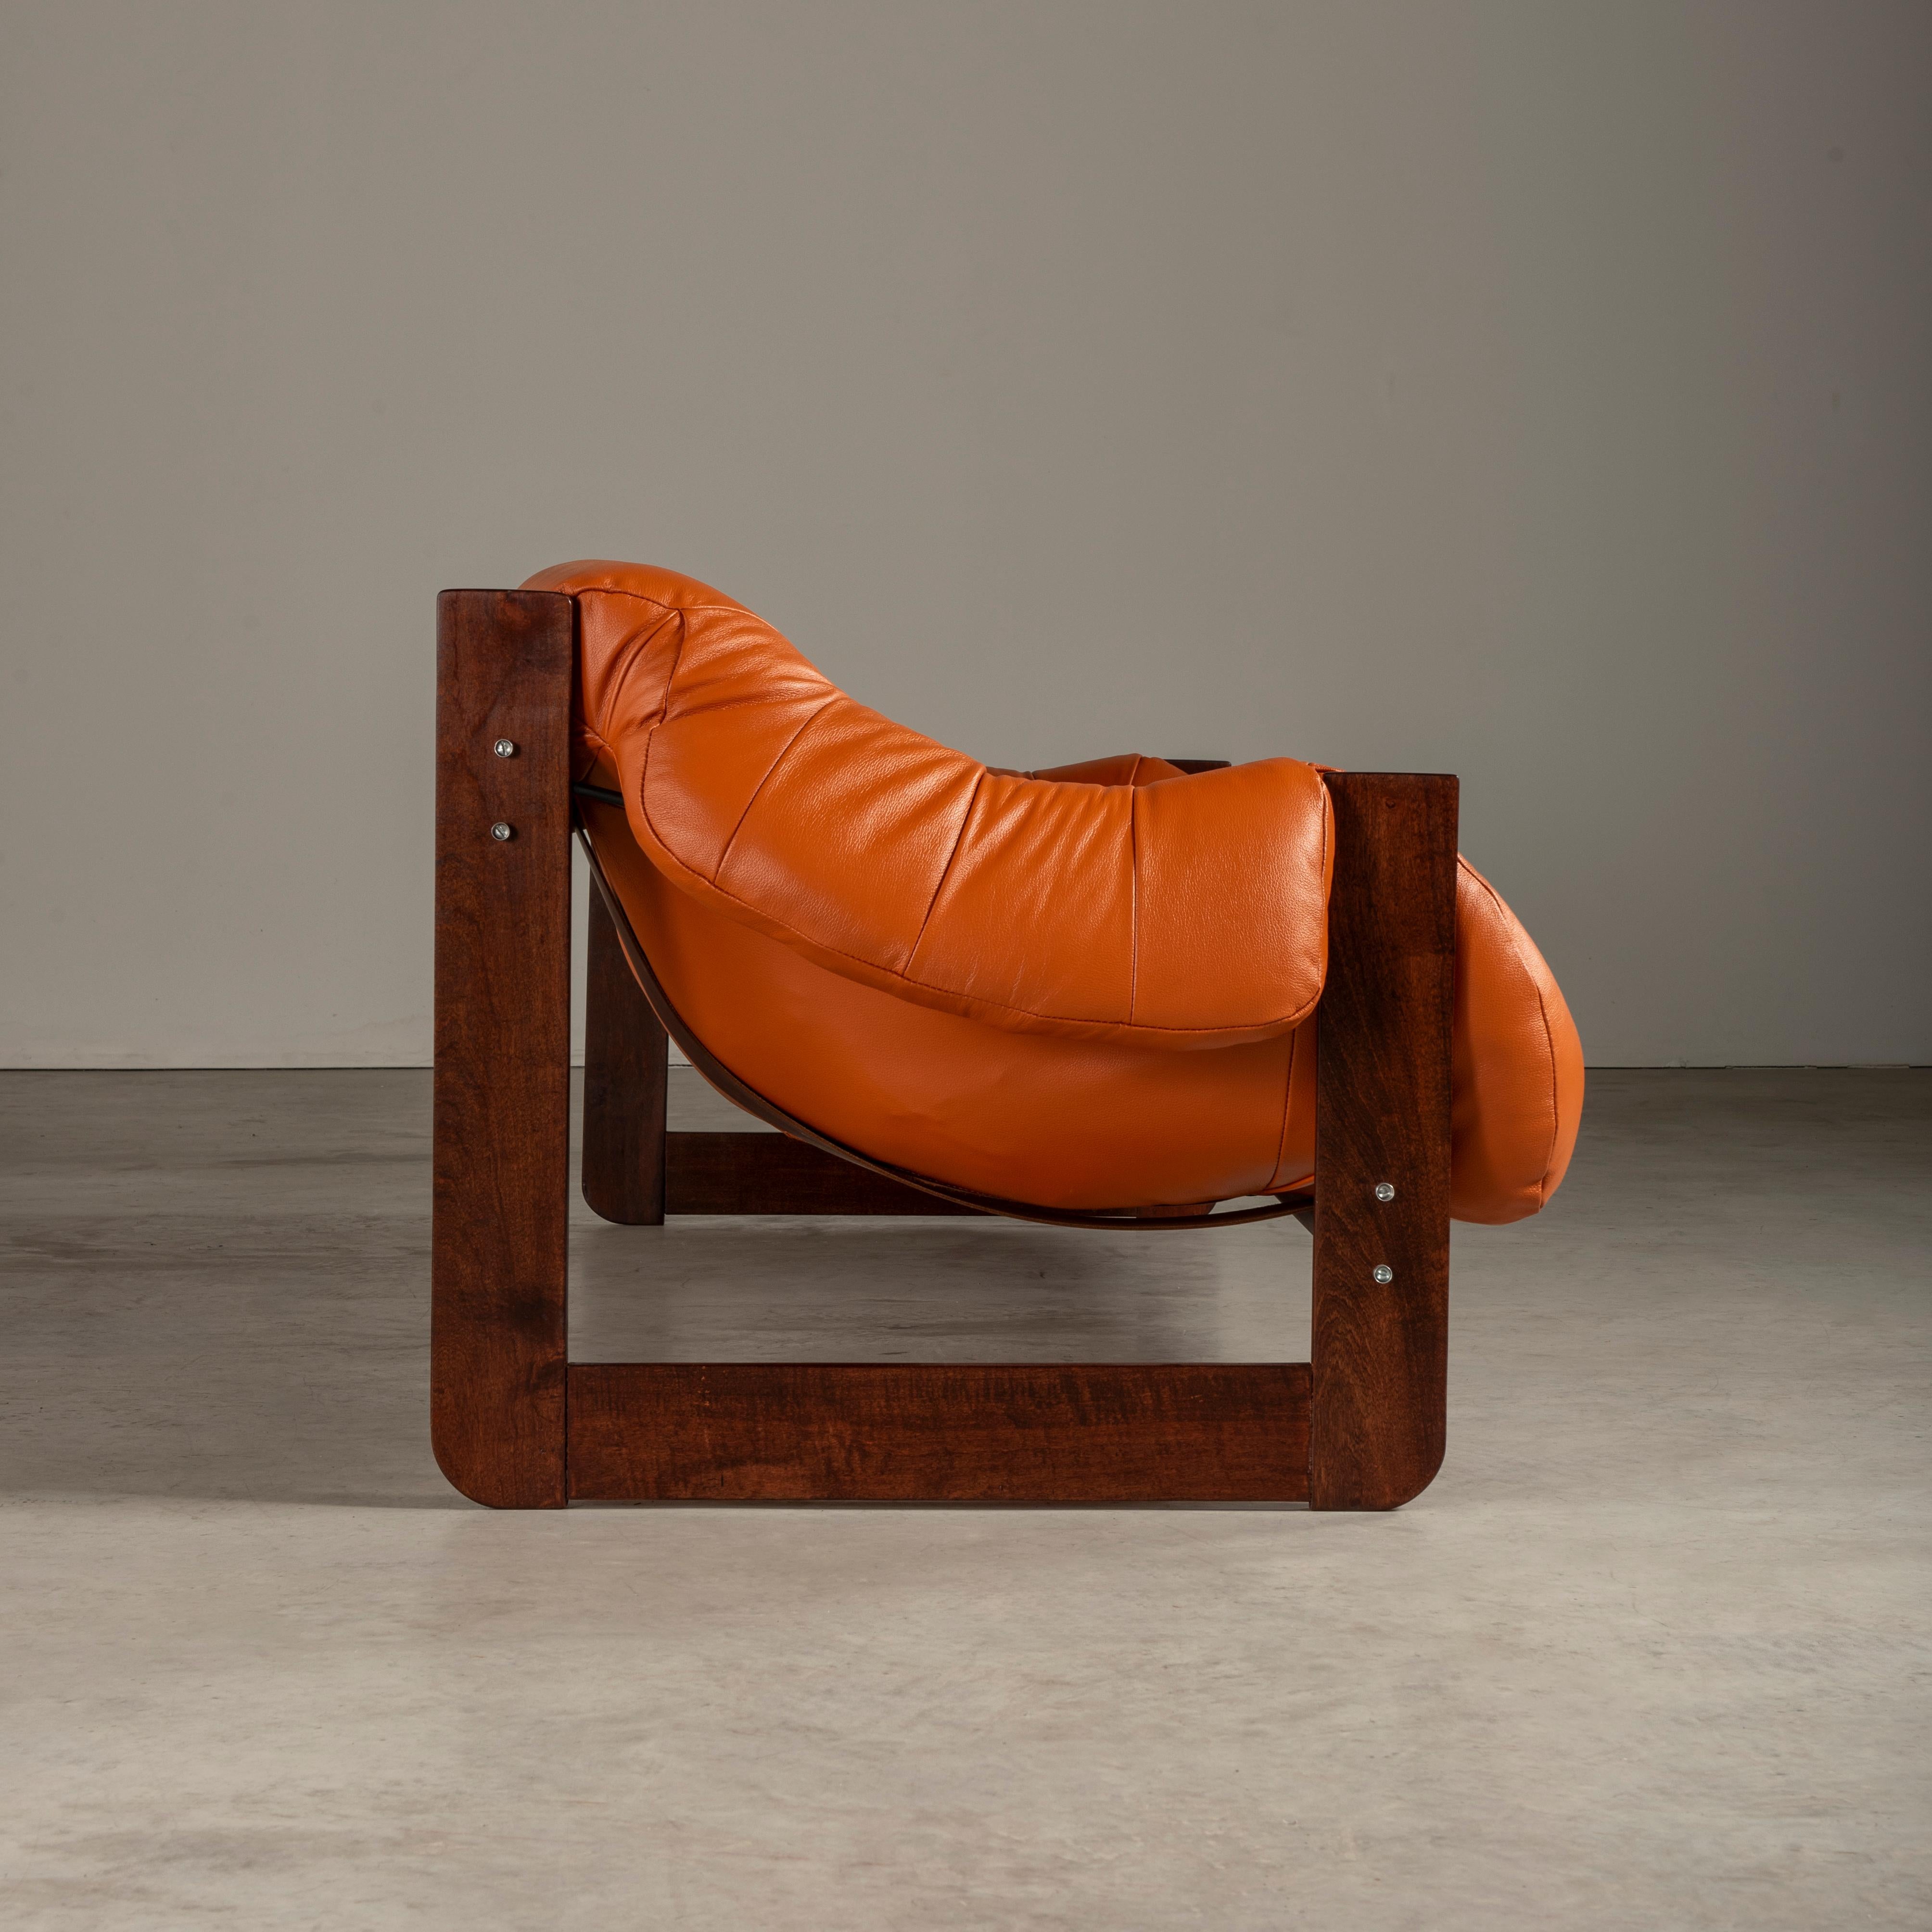 Das von Percival Lafer entworfene Sofa MP-97 ist ein wirklich außergewöhnliches Möbelstück. Dieses Sofa besteht aus einem Massivholzrahmen und ist mit hochwertigem Leder in einem atemberaubenden Orangeton gepolstert. Er bietet unvergleichlichen